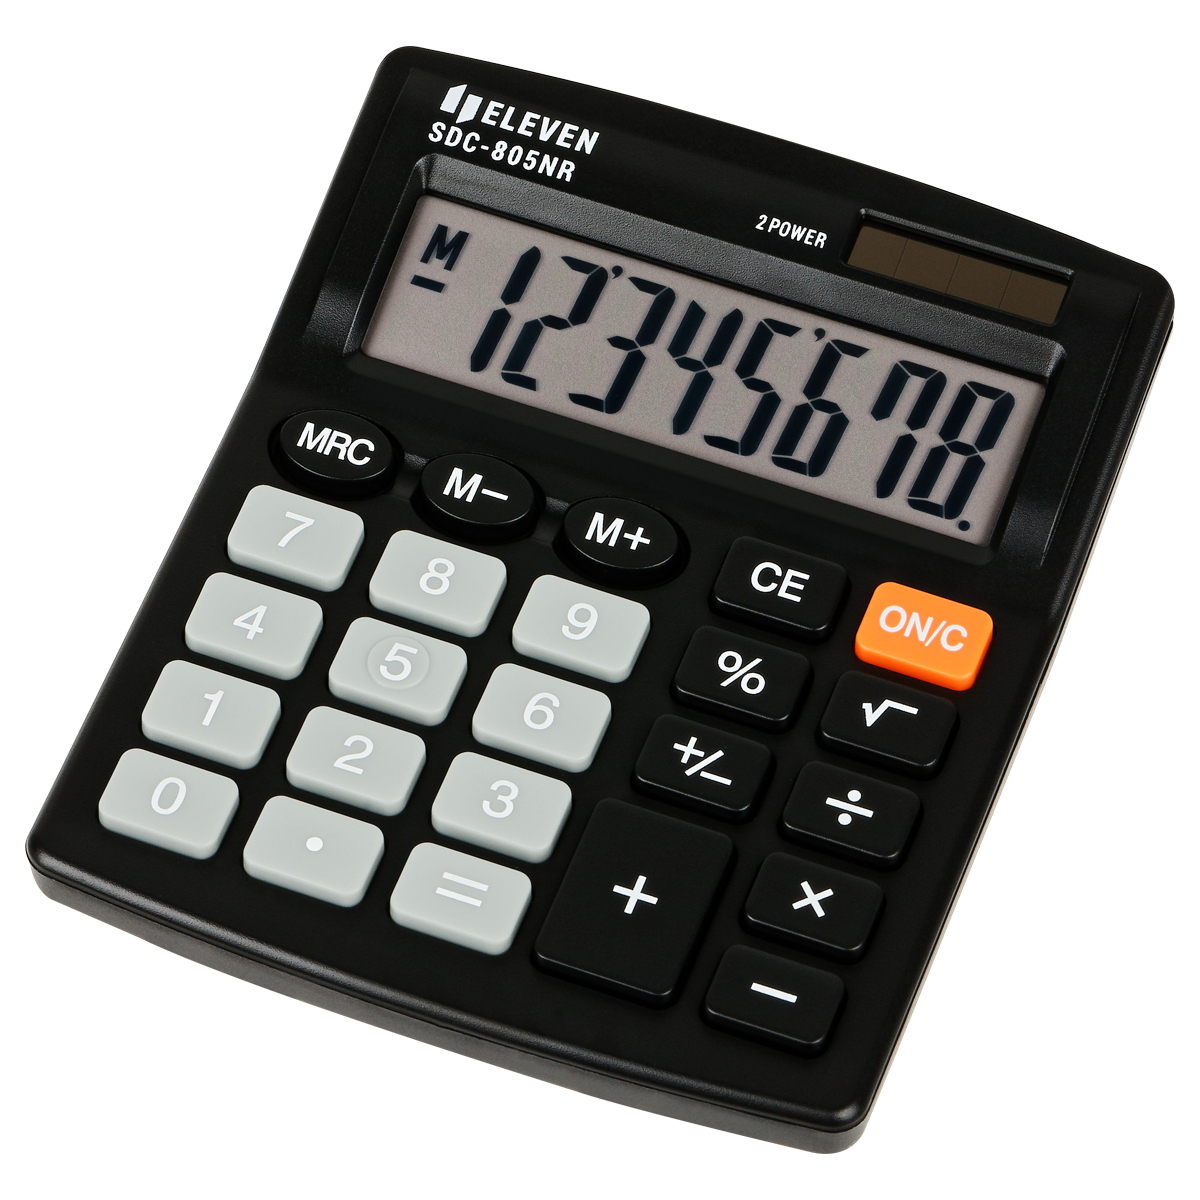 Калькулятор настольный Eleven SDC-805NR, 8 разр., двойное питание, 127*105*21мм, черный SDC-805NR